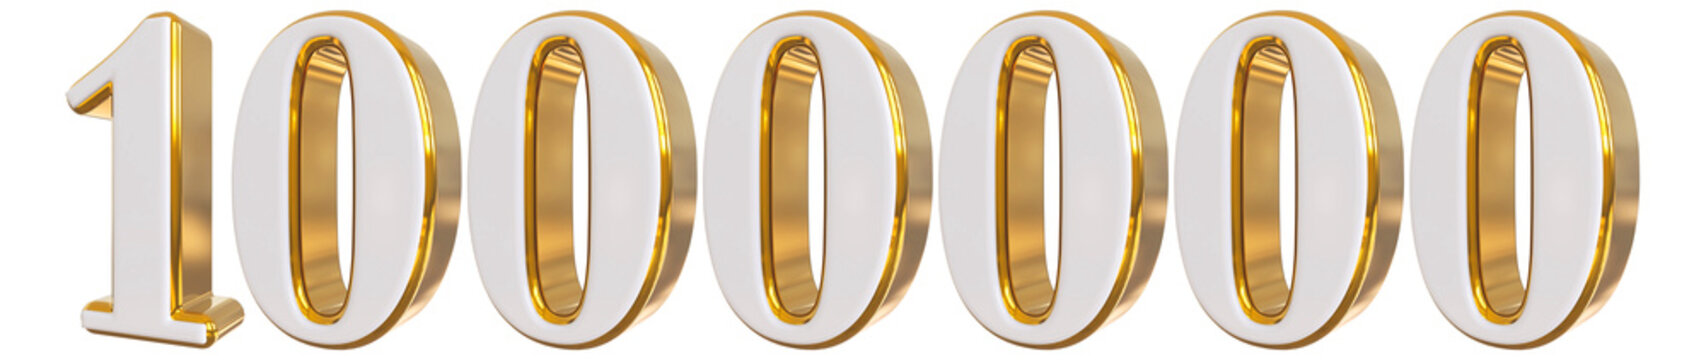 1000000 Follower 3d Gold Number